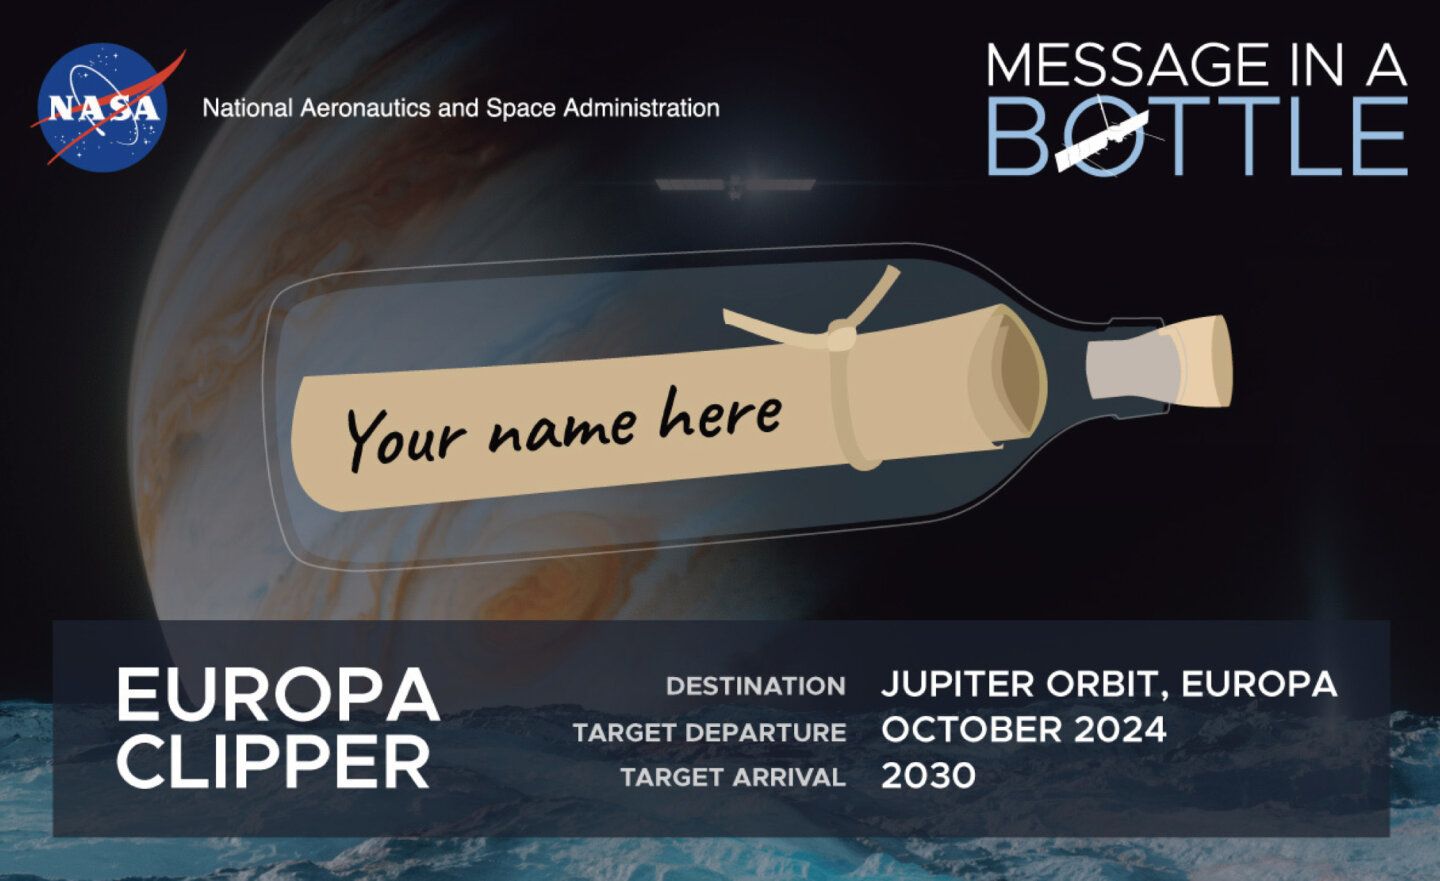 【免費】NASA 開放「把名字送上木衛二 歐羅巴」計畫，2024 年 10 月起飛！